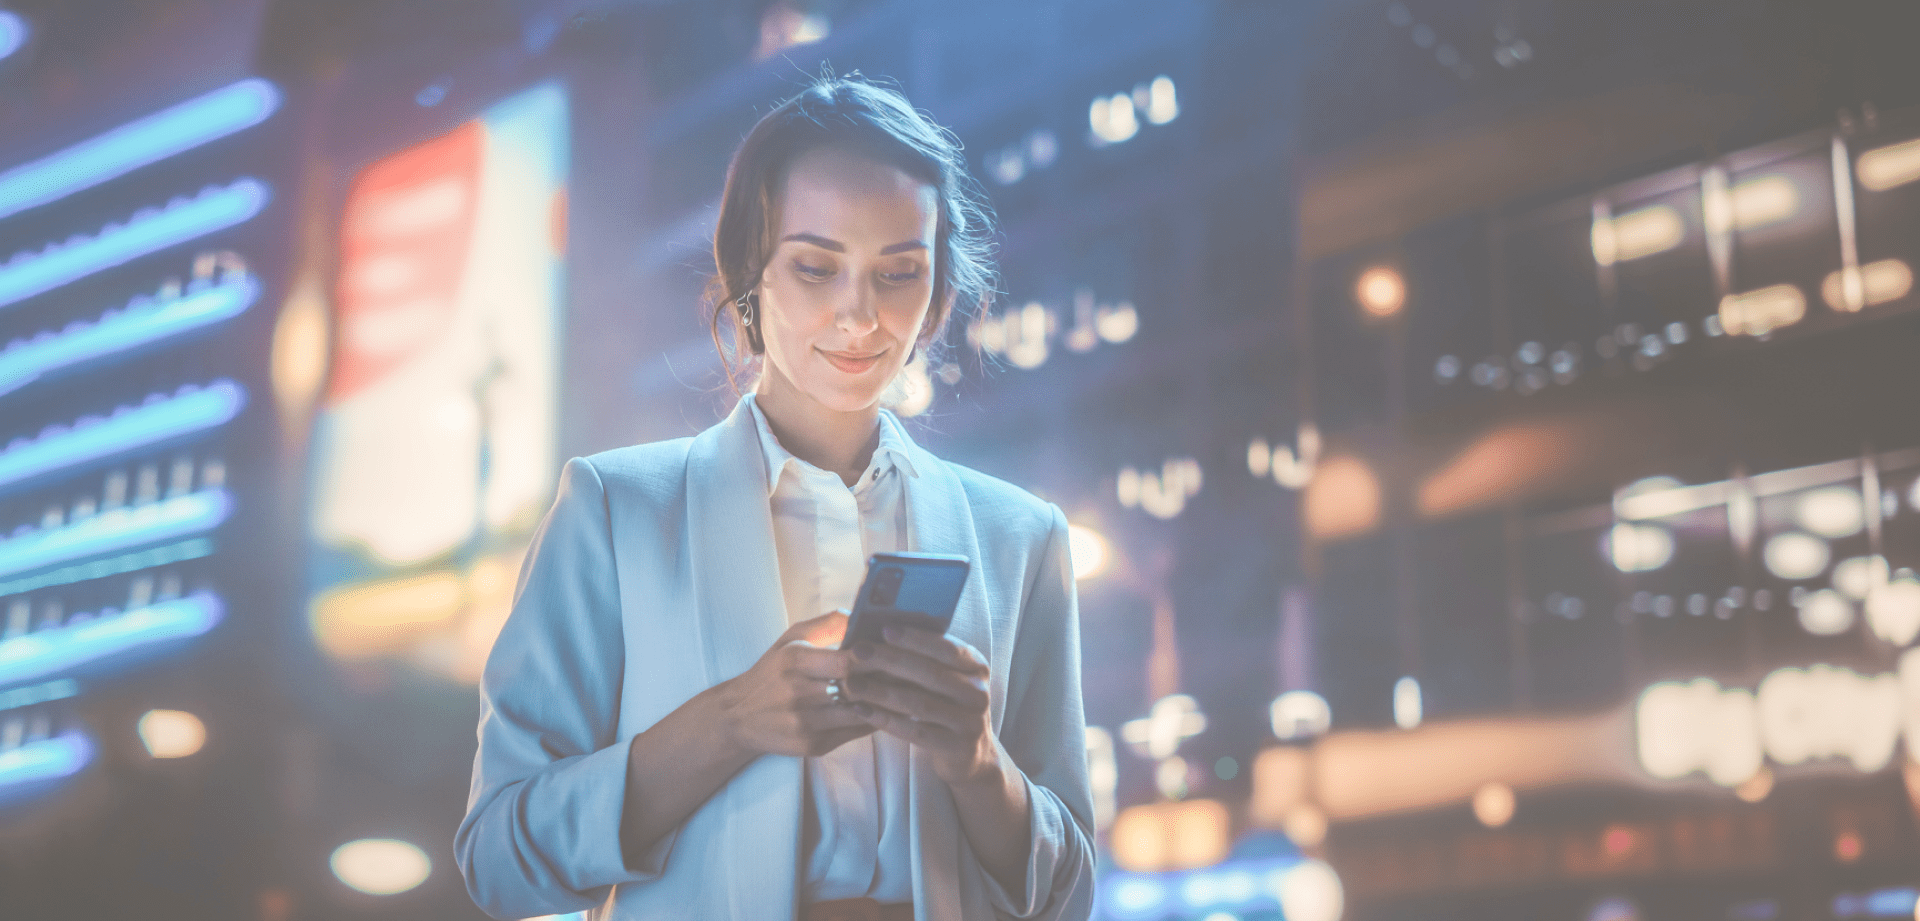 A woman checks her phone in an urban setting